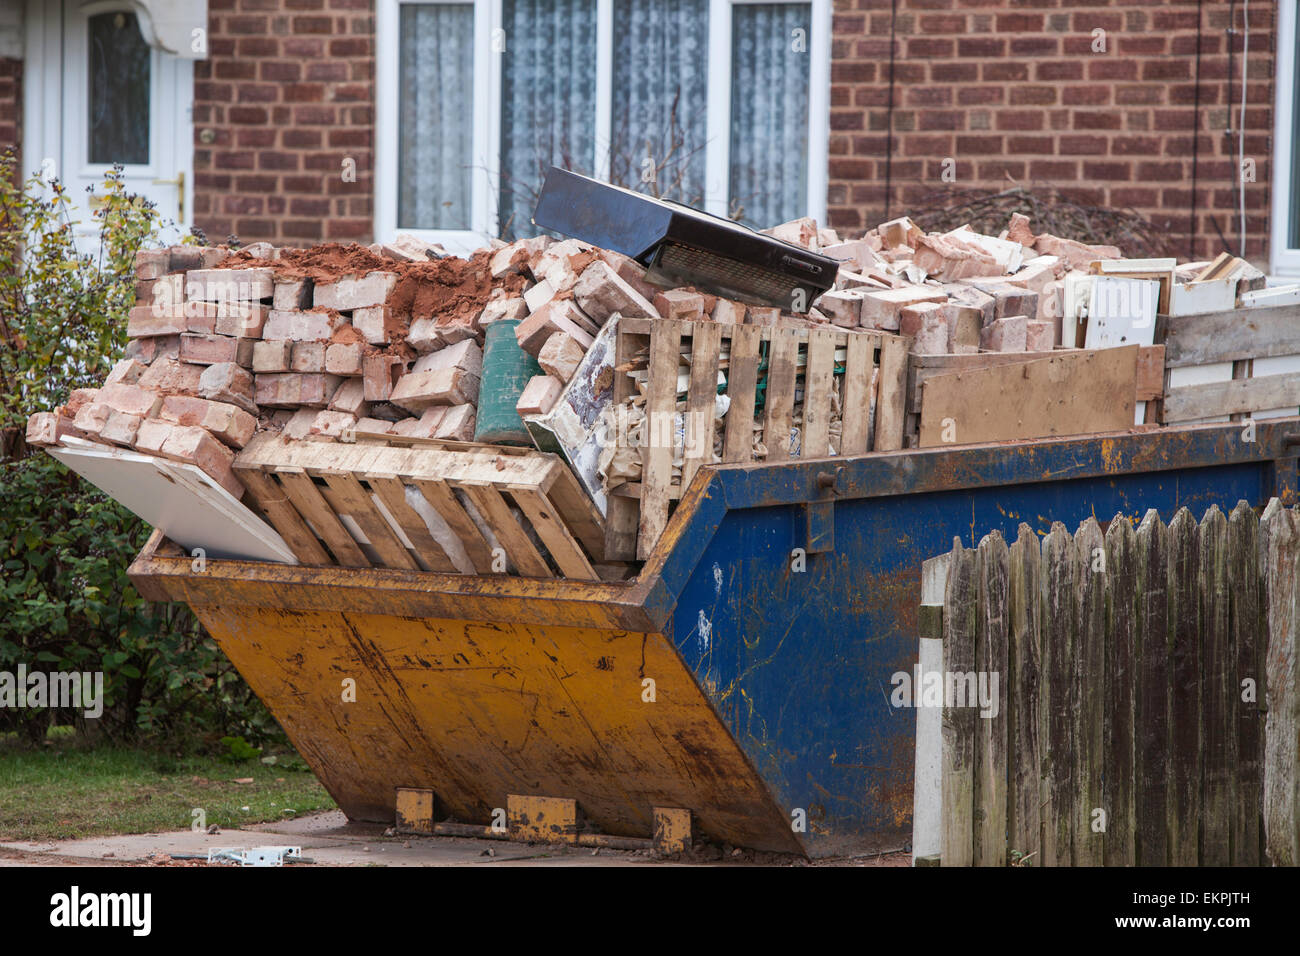 Overloaded skip, England ,UK Stock Photo